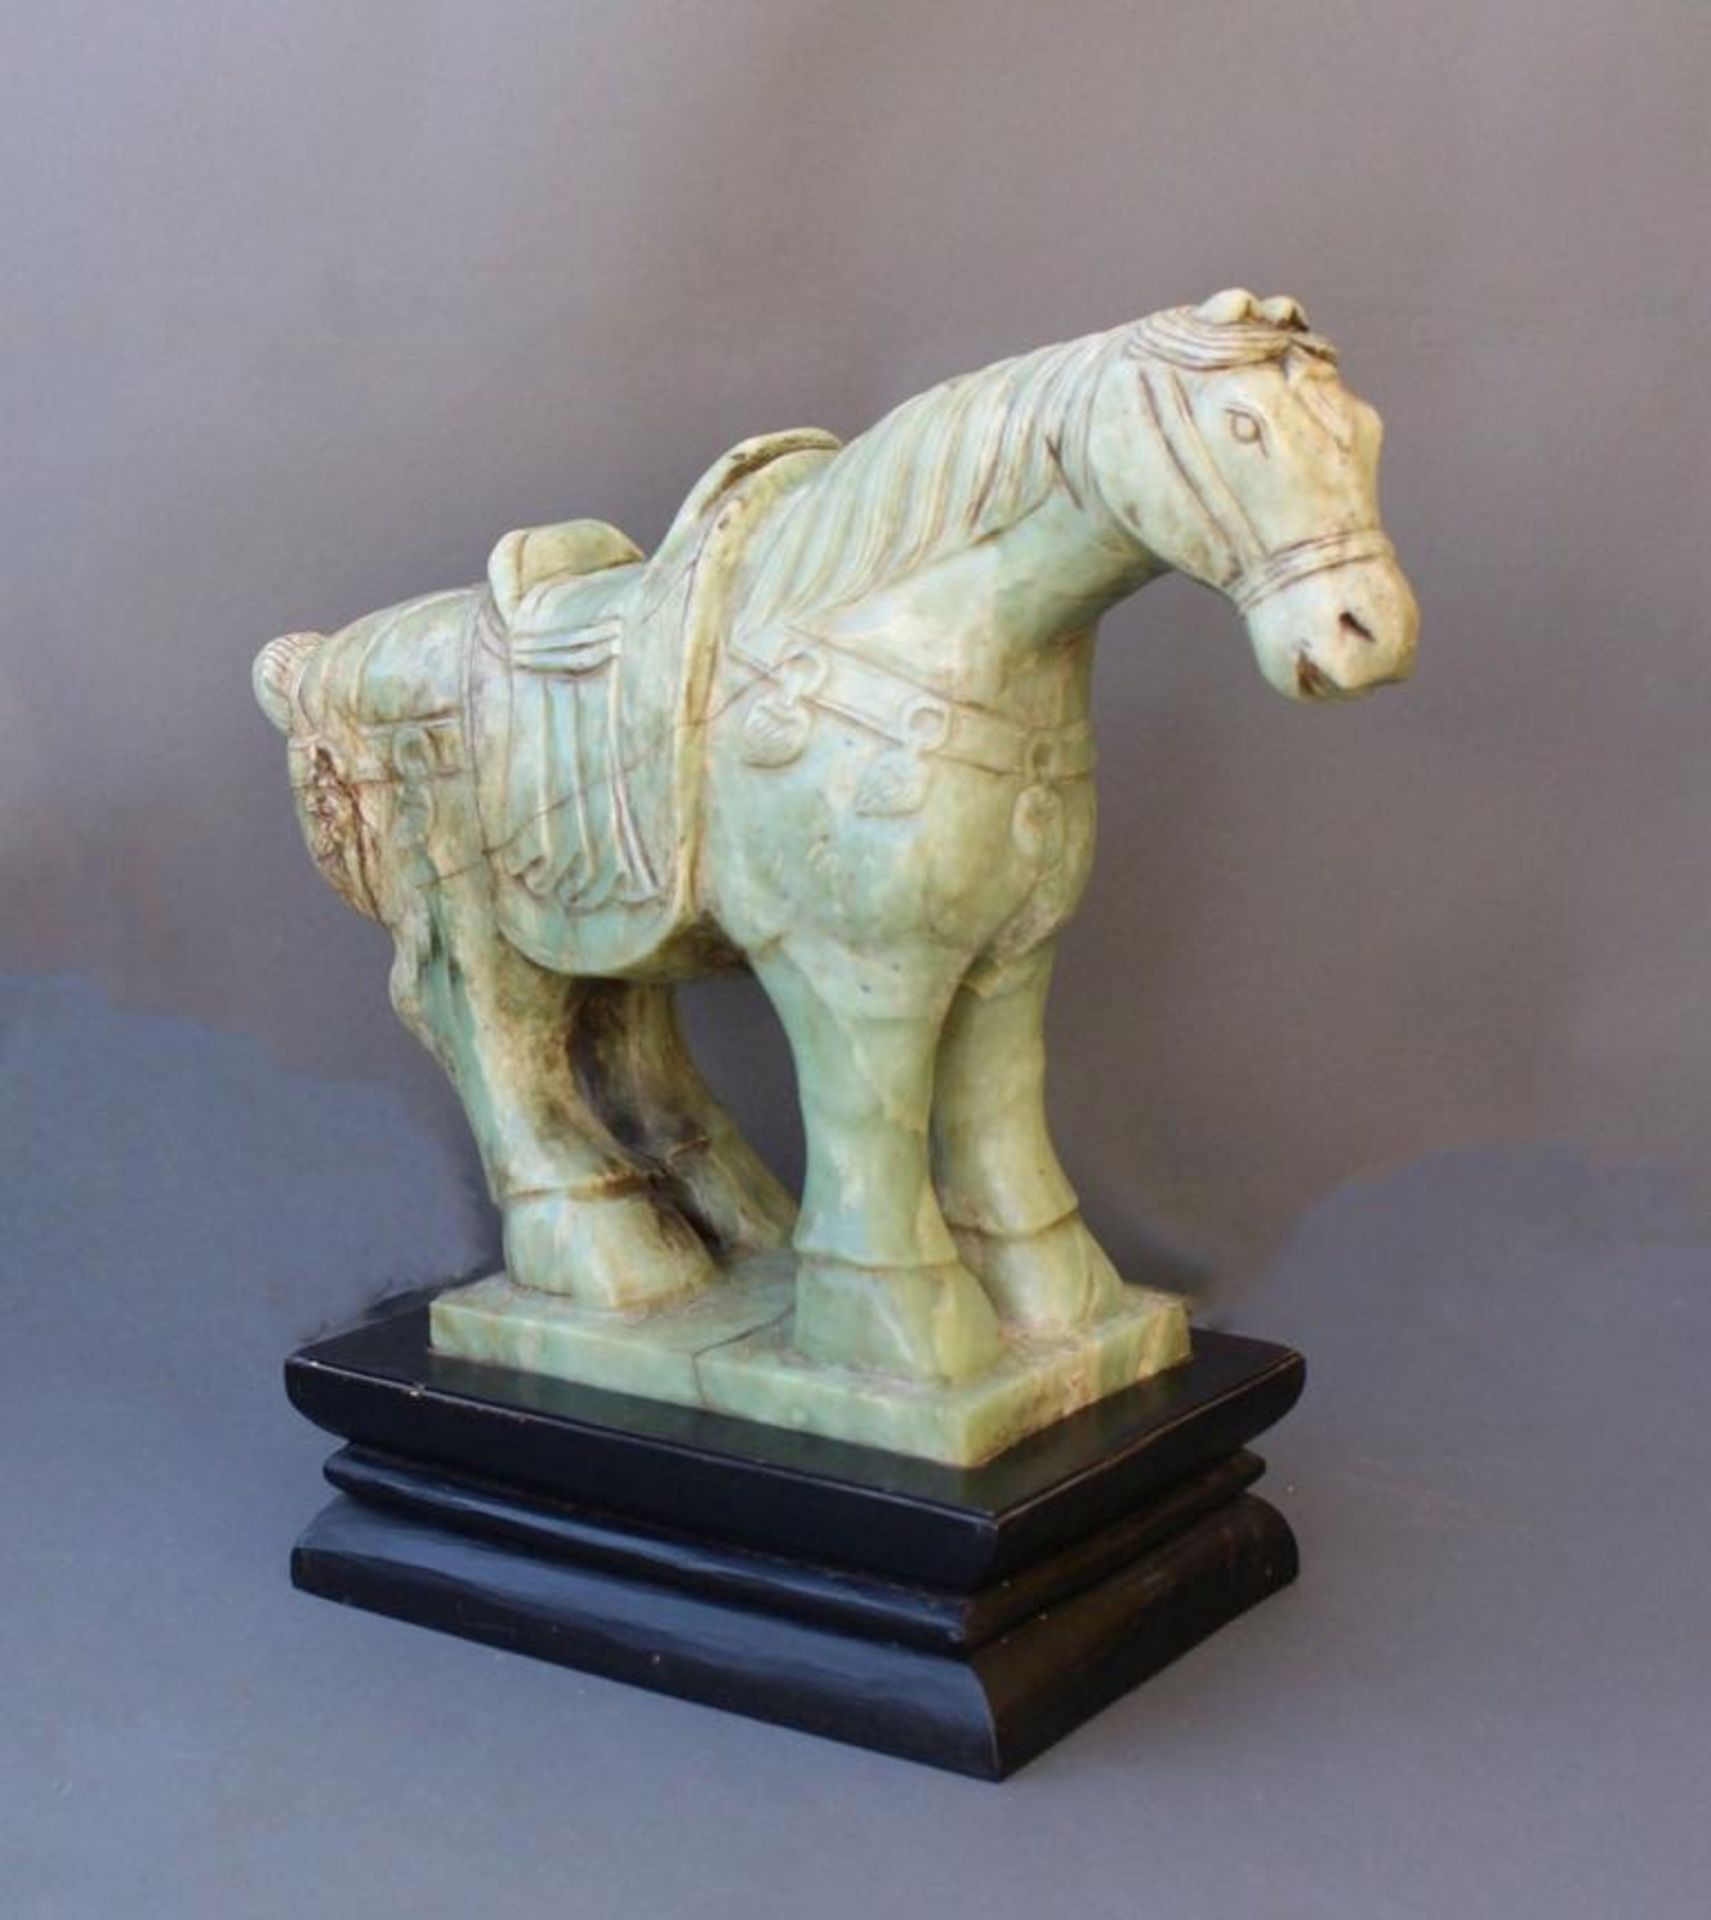 Sehr große Pferdefigur, Serpentin-JadeChina, 20. Jahrhundert, vollplastisch gearbeitetes Pferd mit